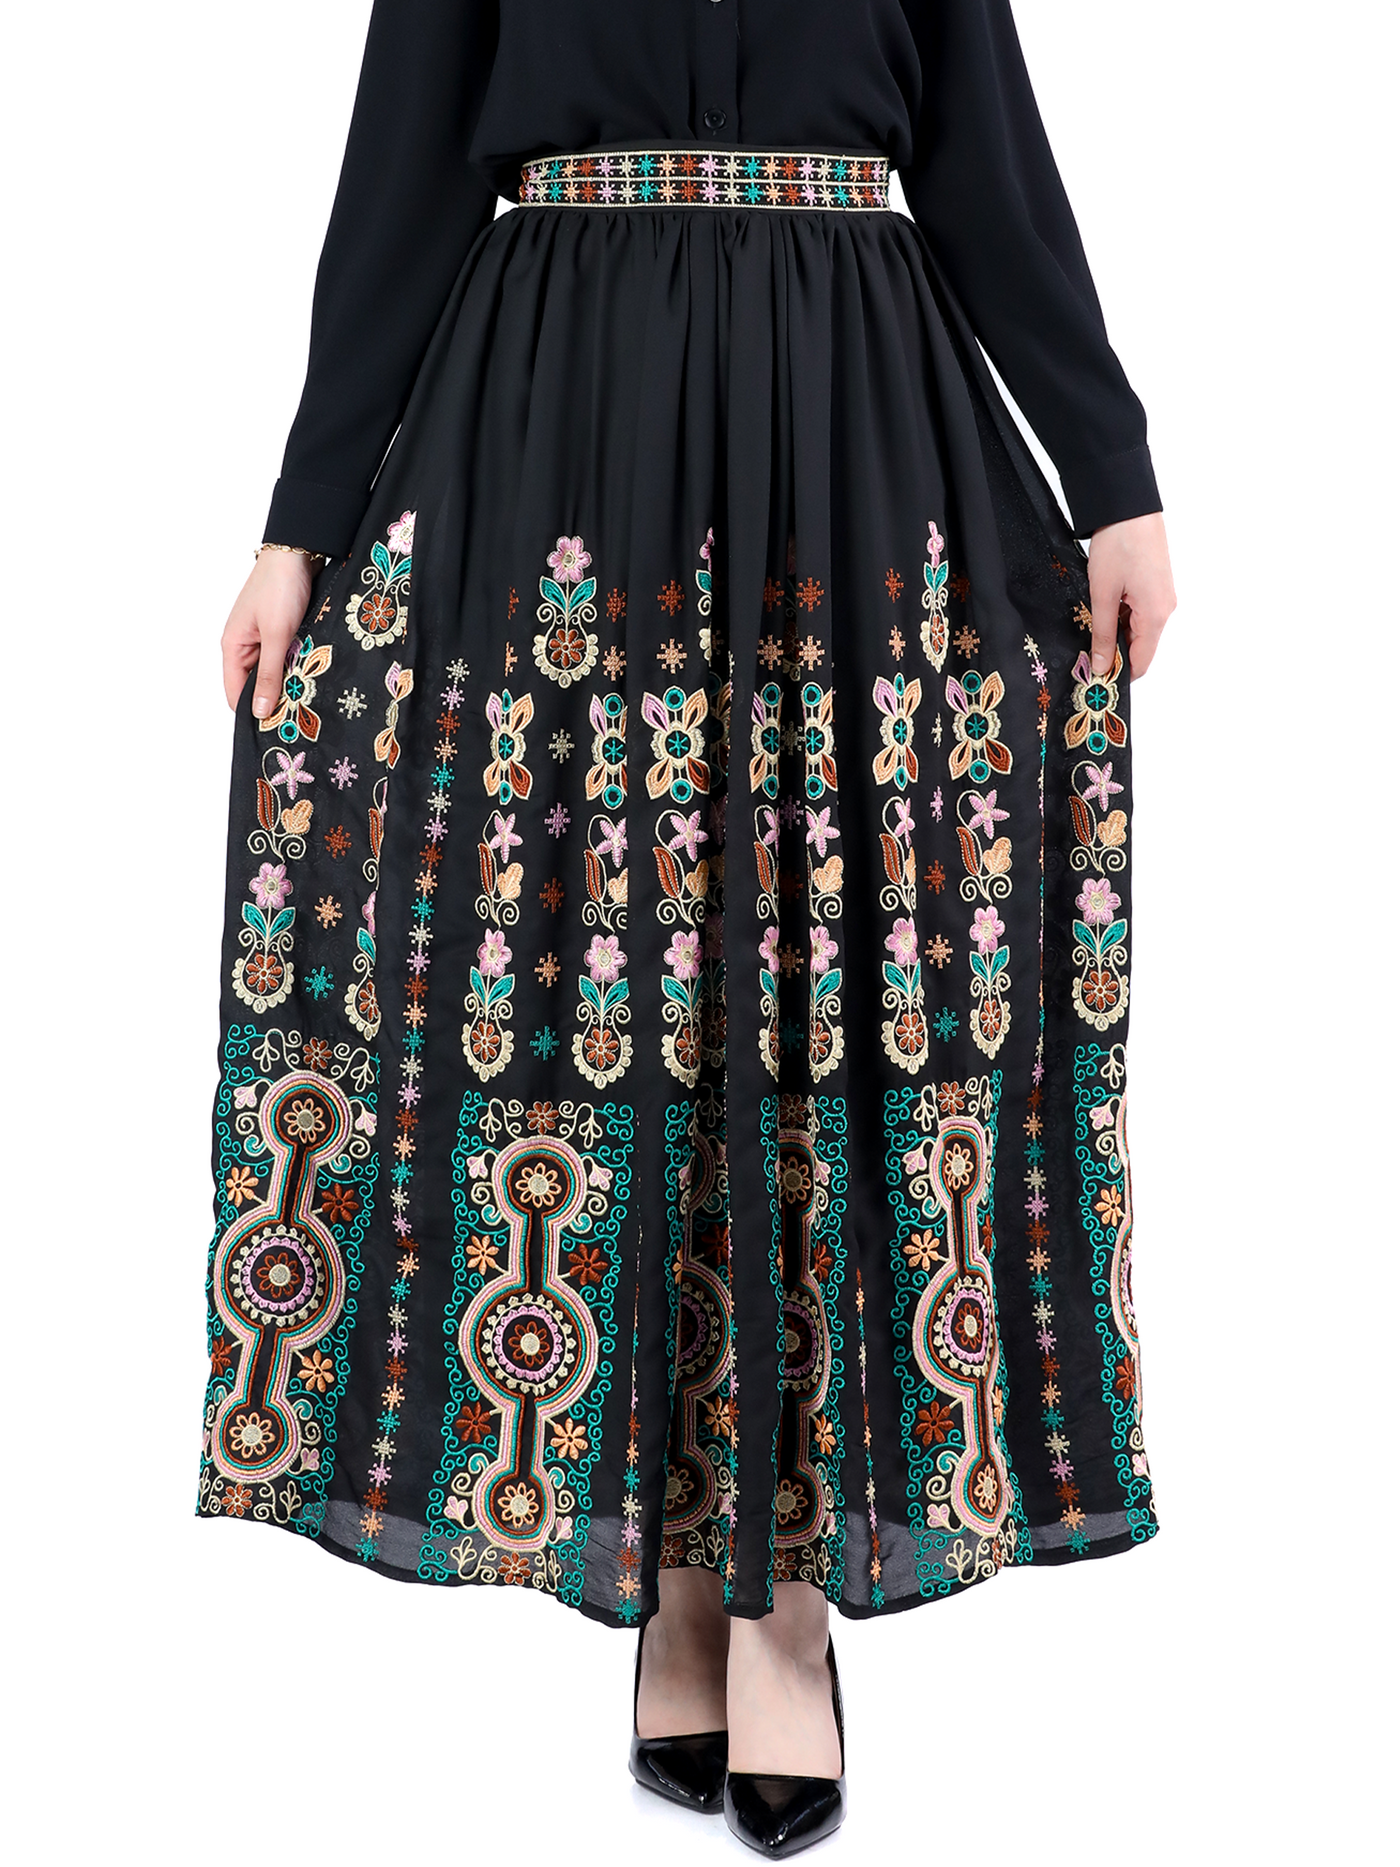 Skirt Of Yafa - High Quality Embroidered Skirt